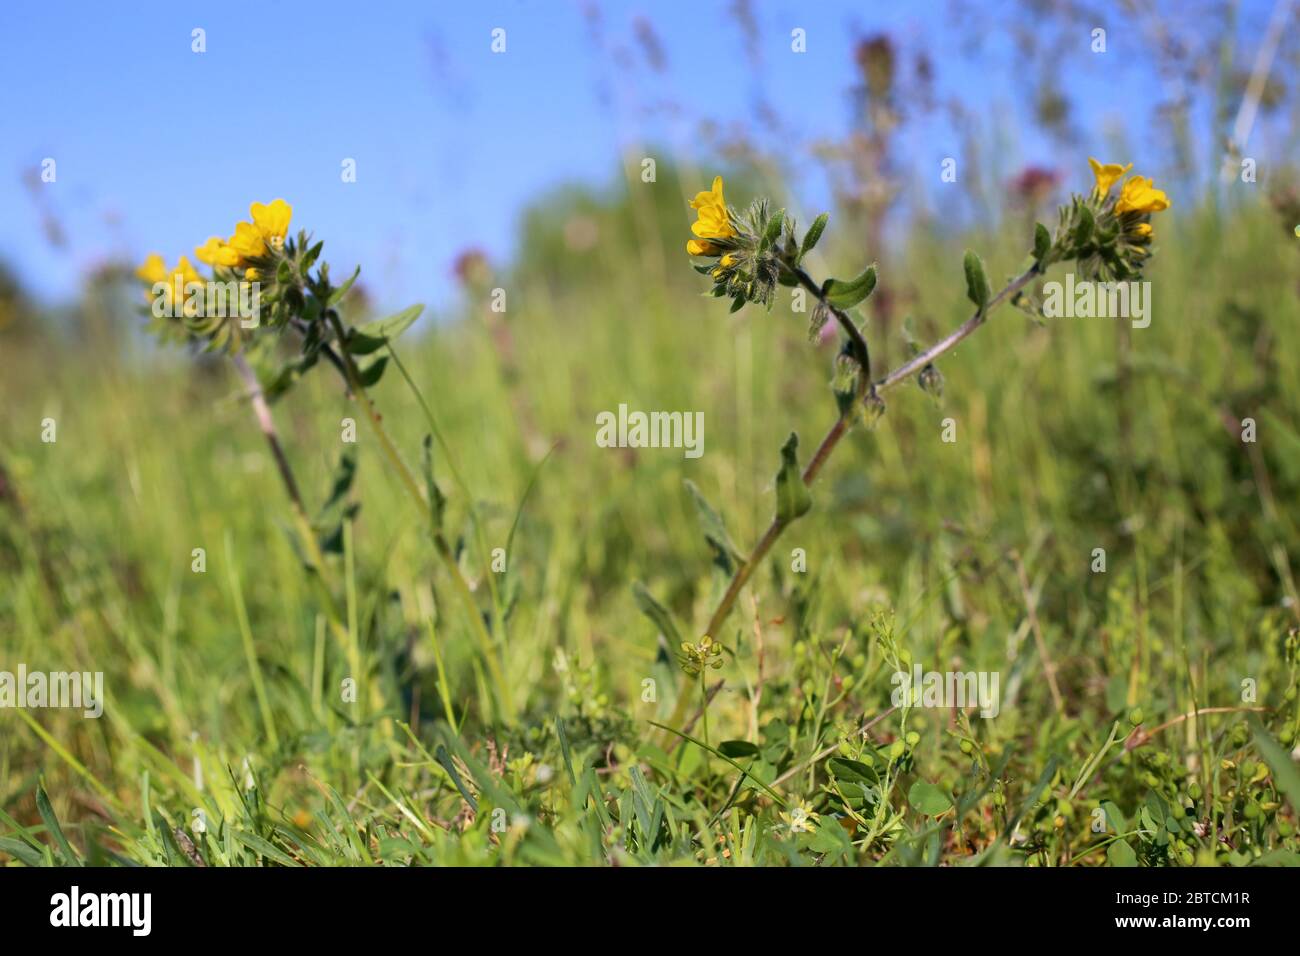 Alkanna primuliflora - Wild plant shot in the spring. Stock Photo